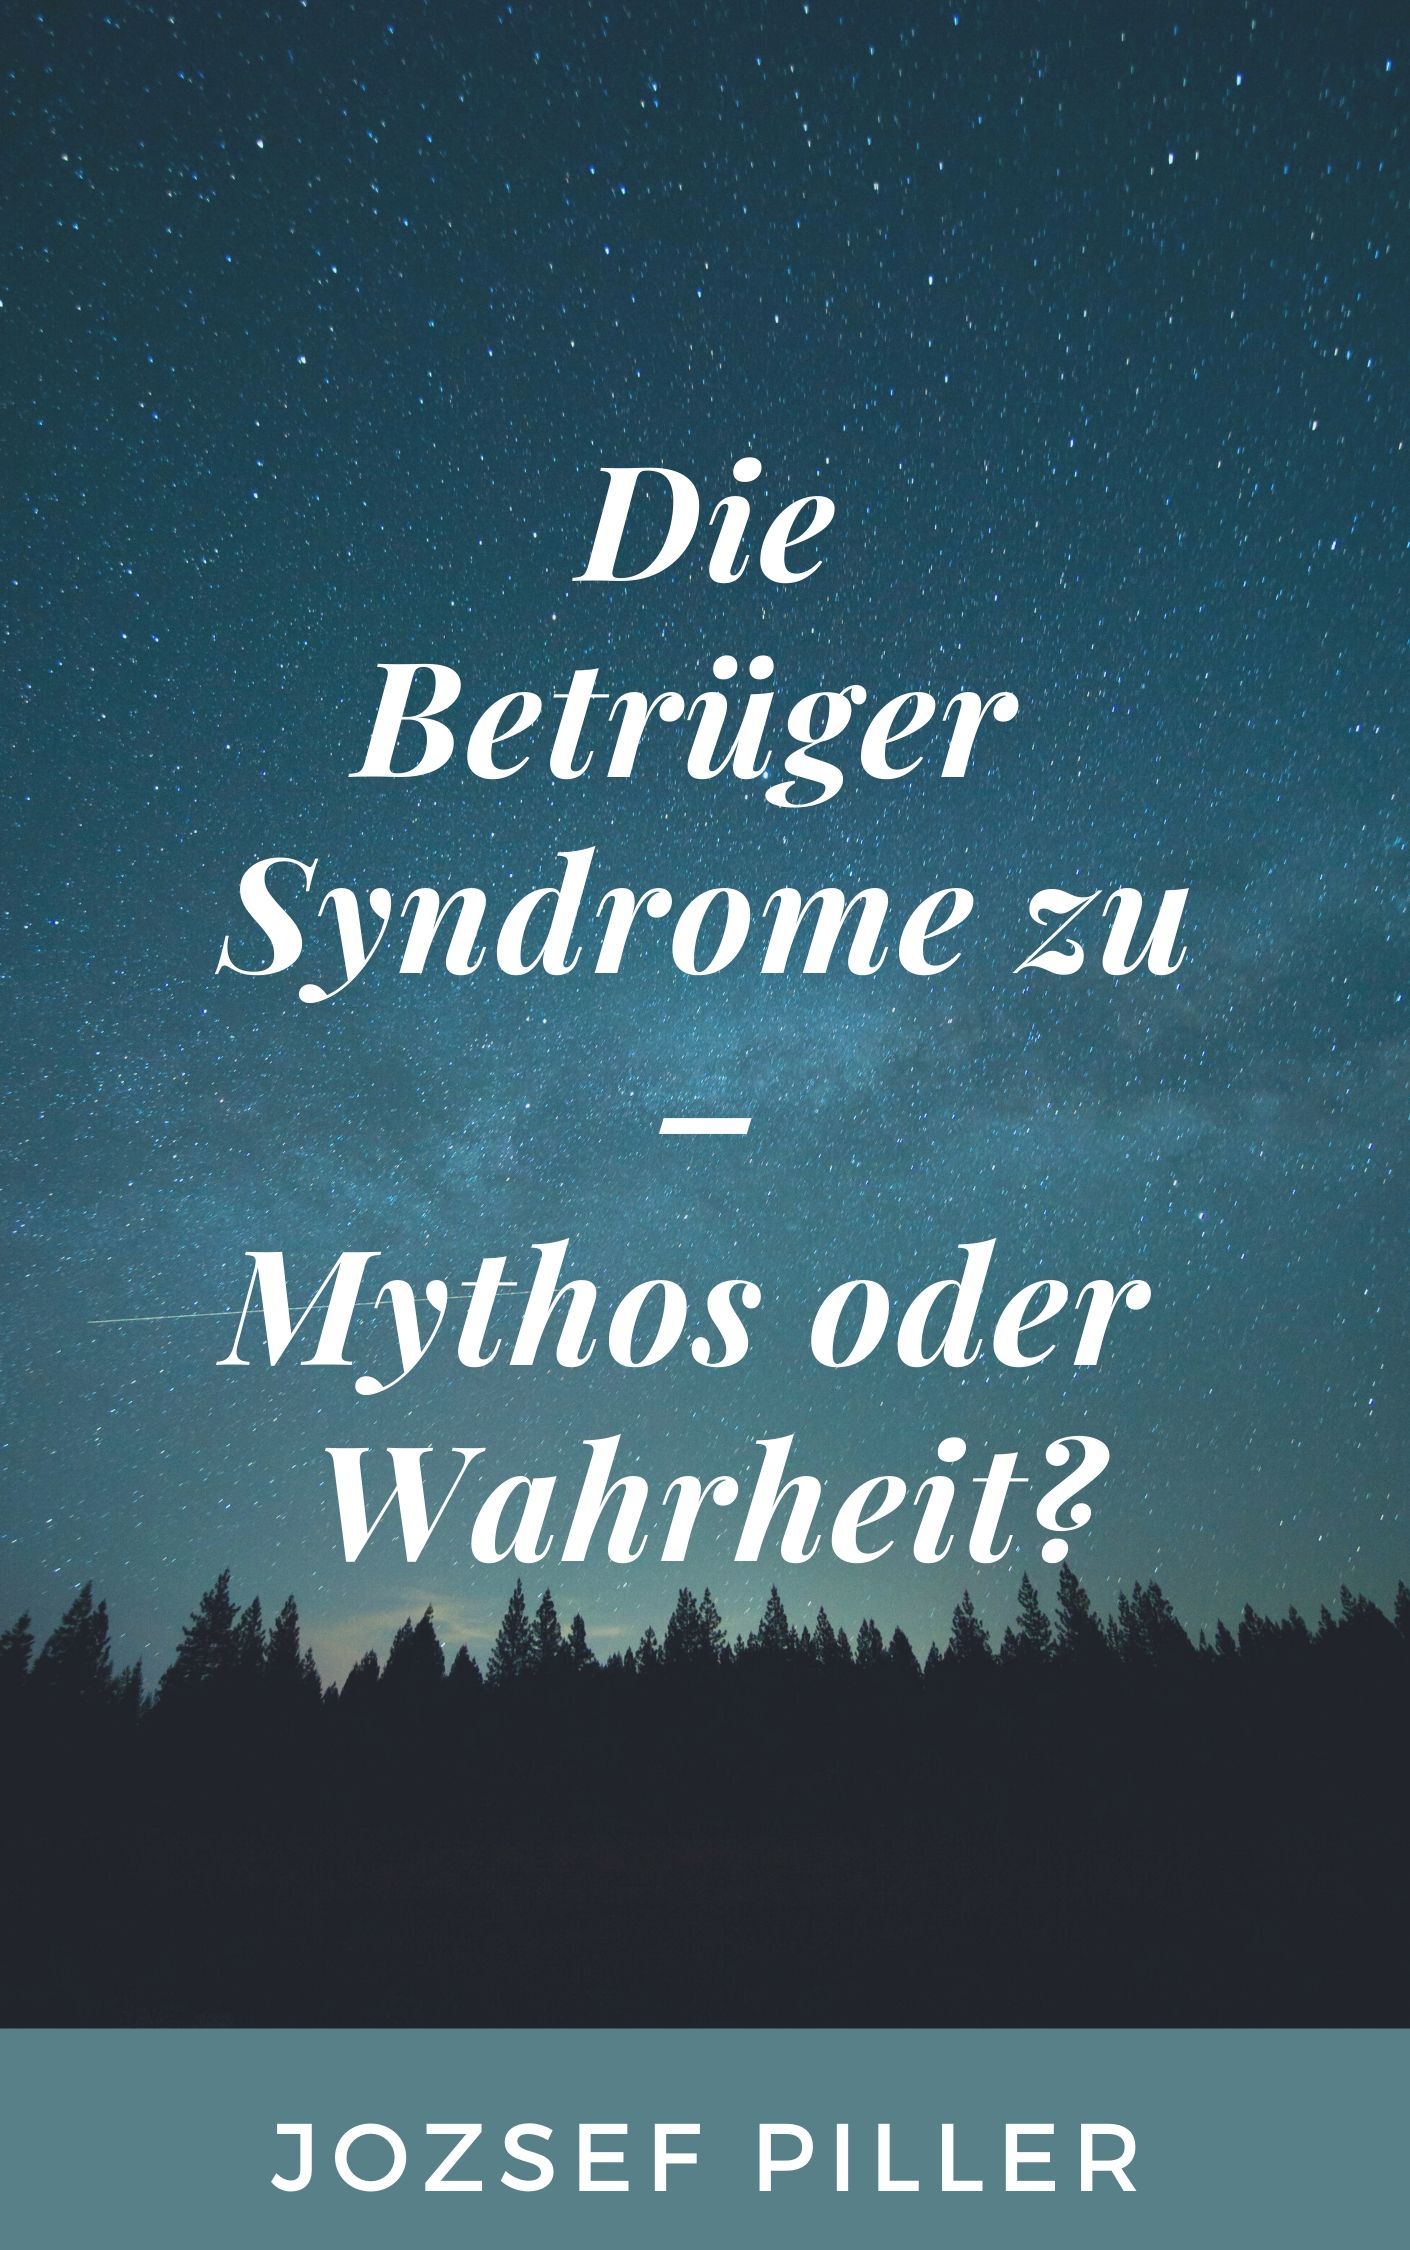 Die Betrüger Syndrome zu - Mythos oder Wahrheit?, eBook by Jozsef Piller